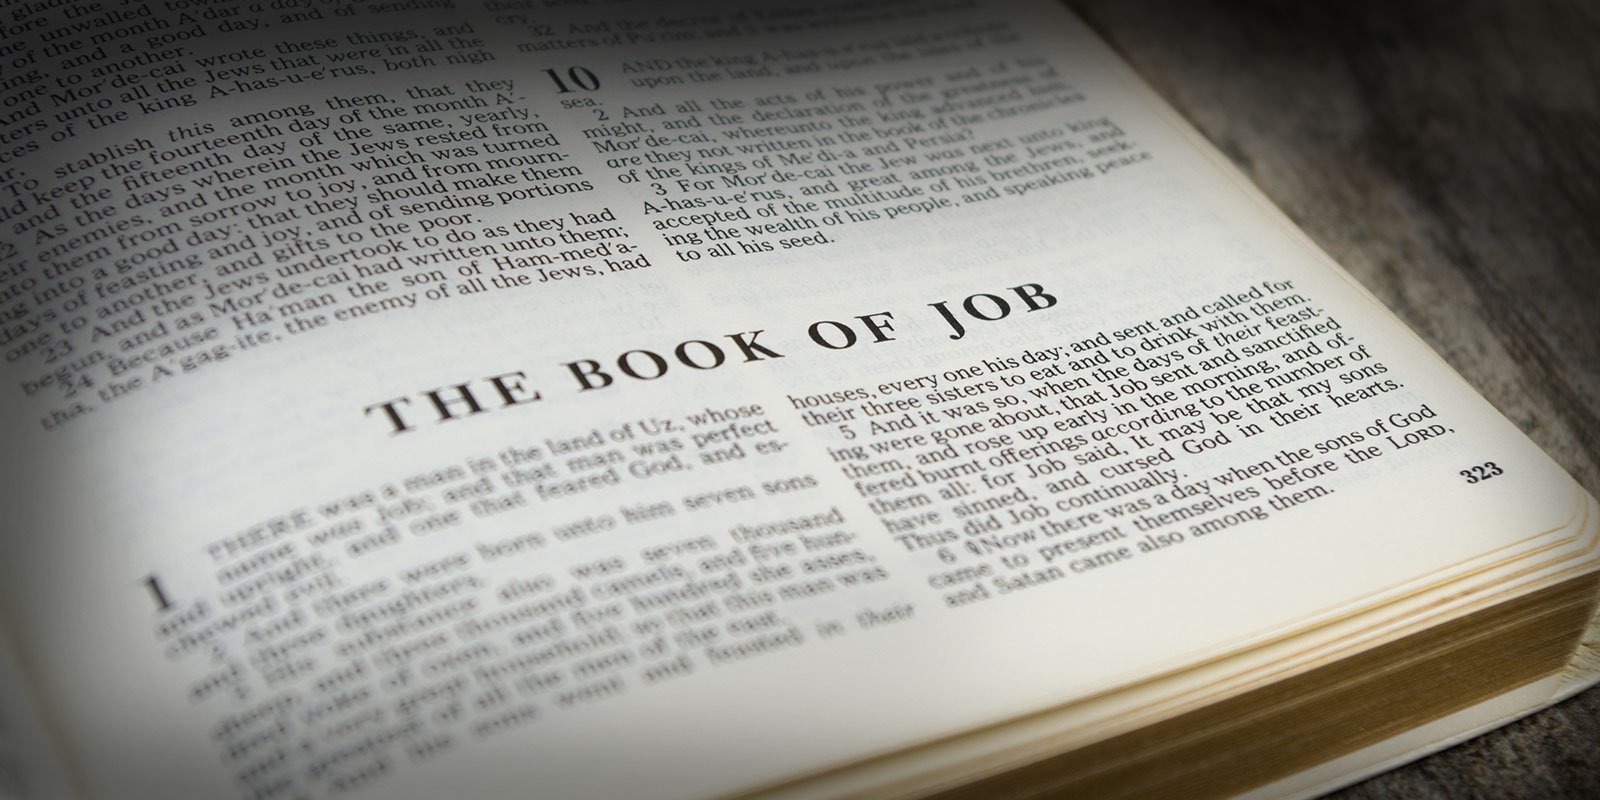 Explore the Book of Job